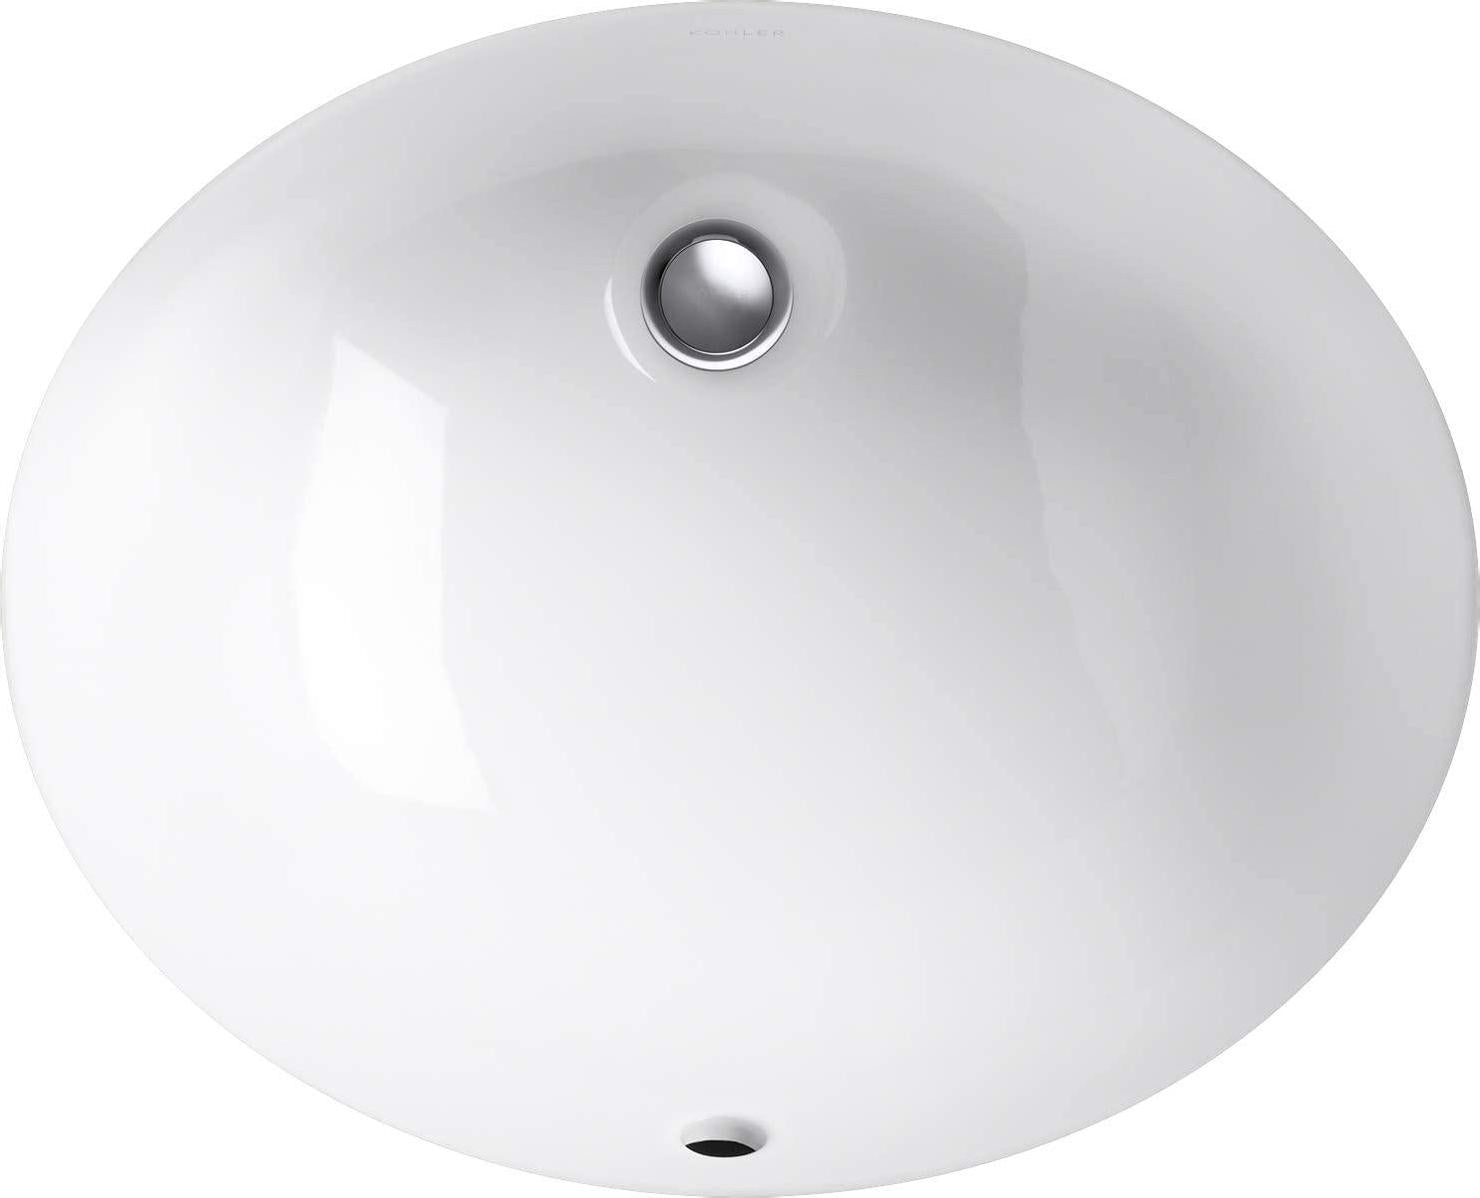 KOHLER K-2209-0 Caxton Under-Mount Bathroom Sink, White